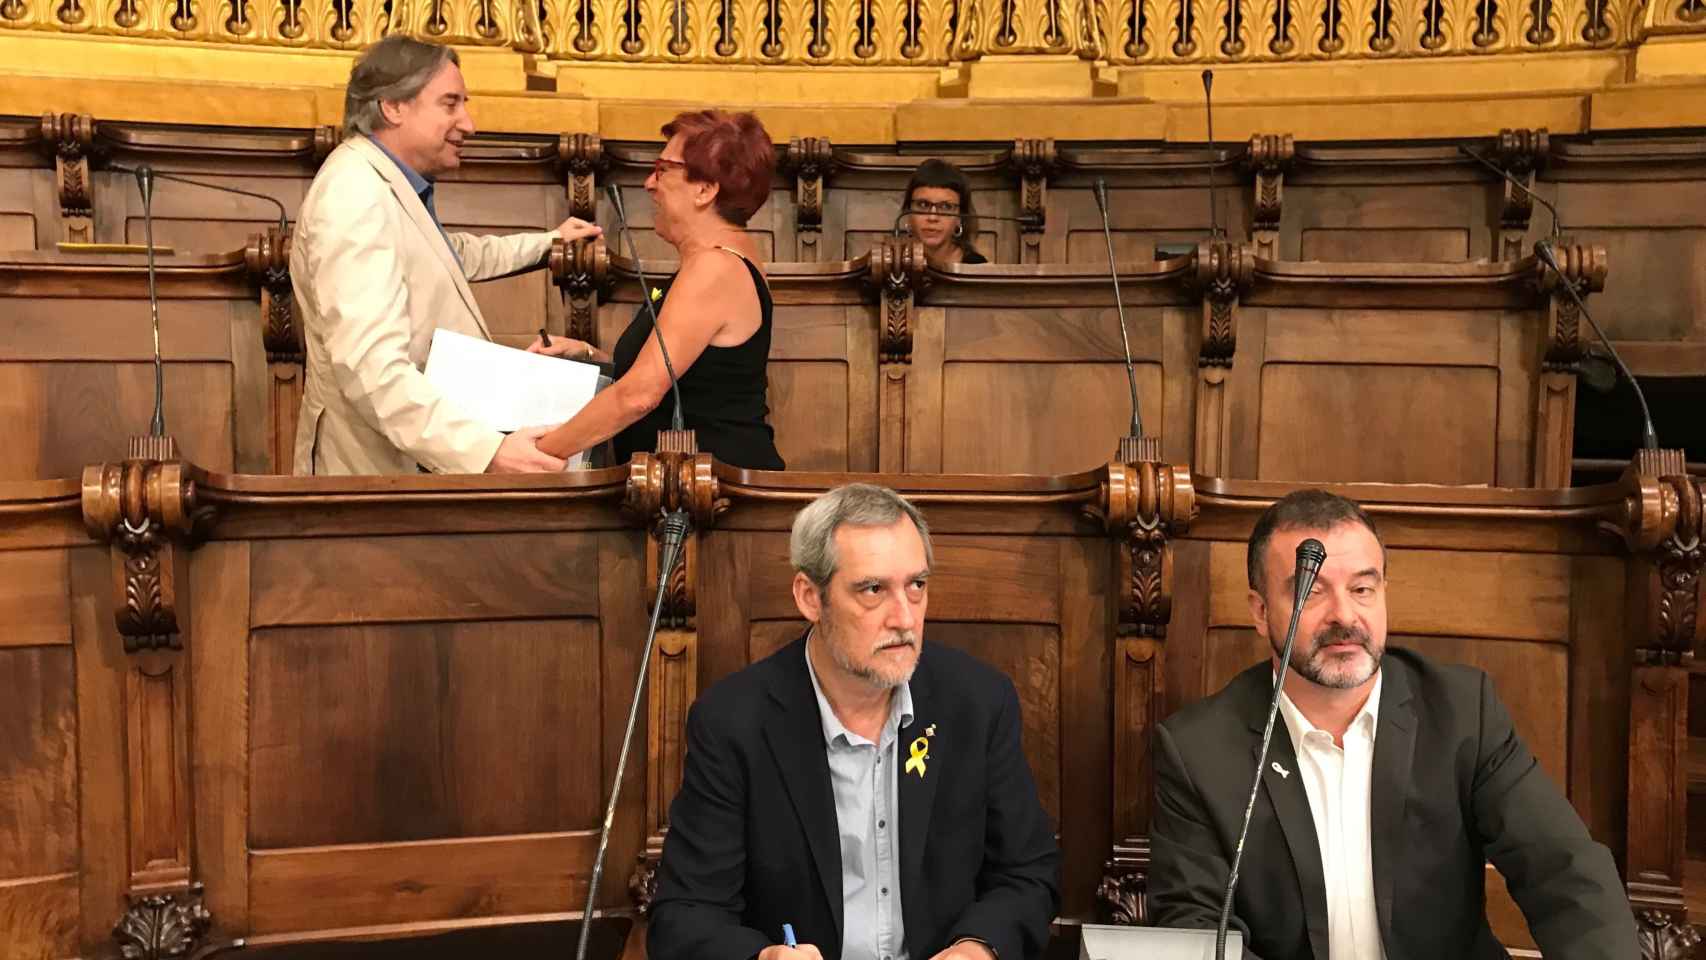 Puigcorbé pasa a ser concejal no adscrito en el Ayuntamiento de Barcelona